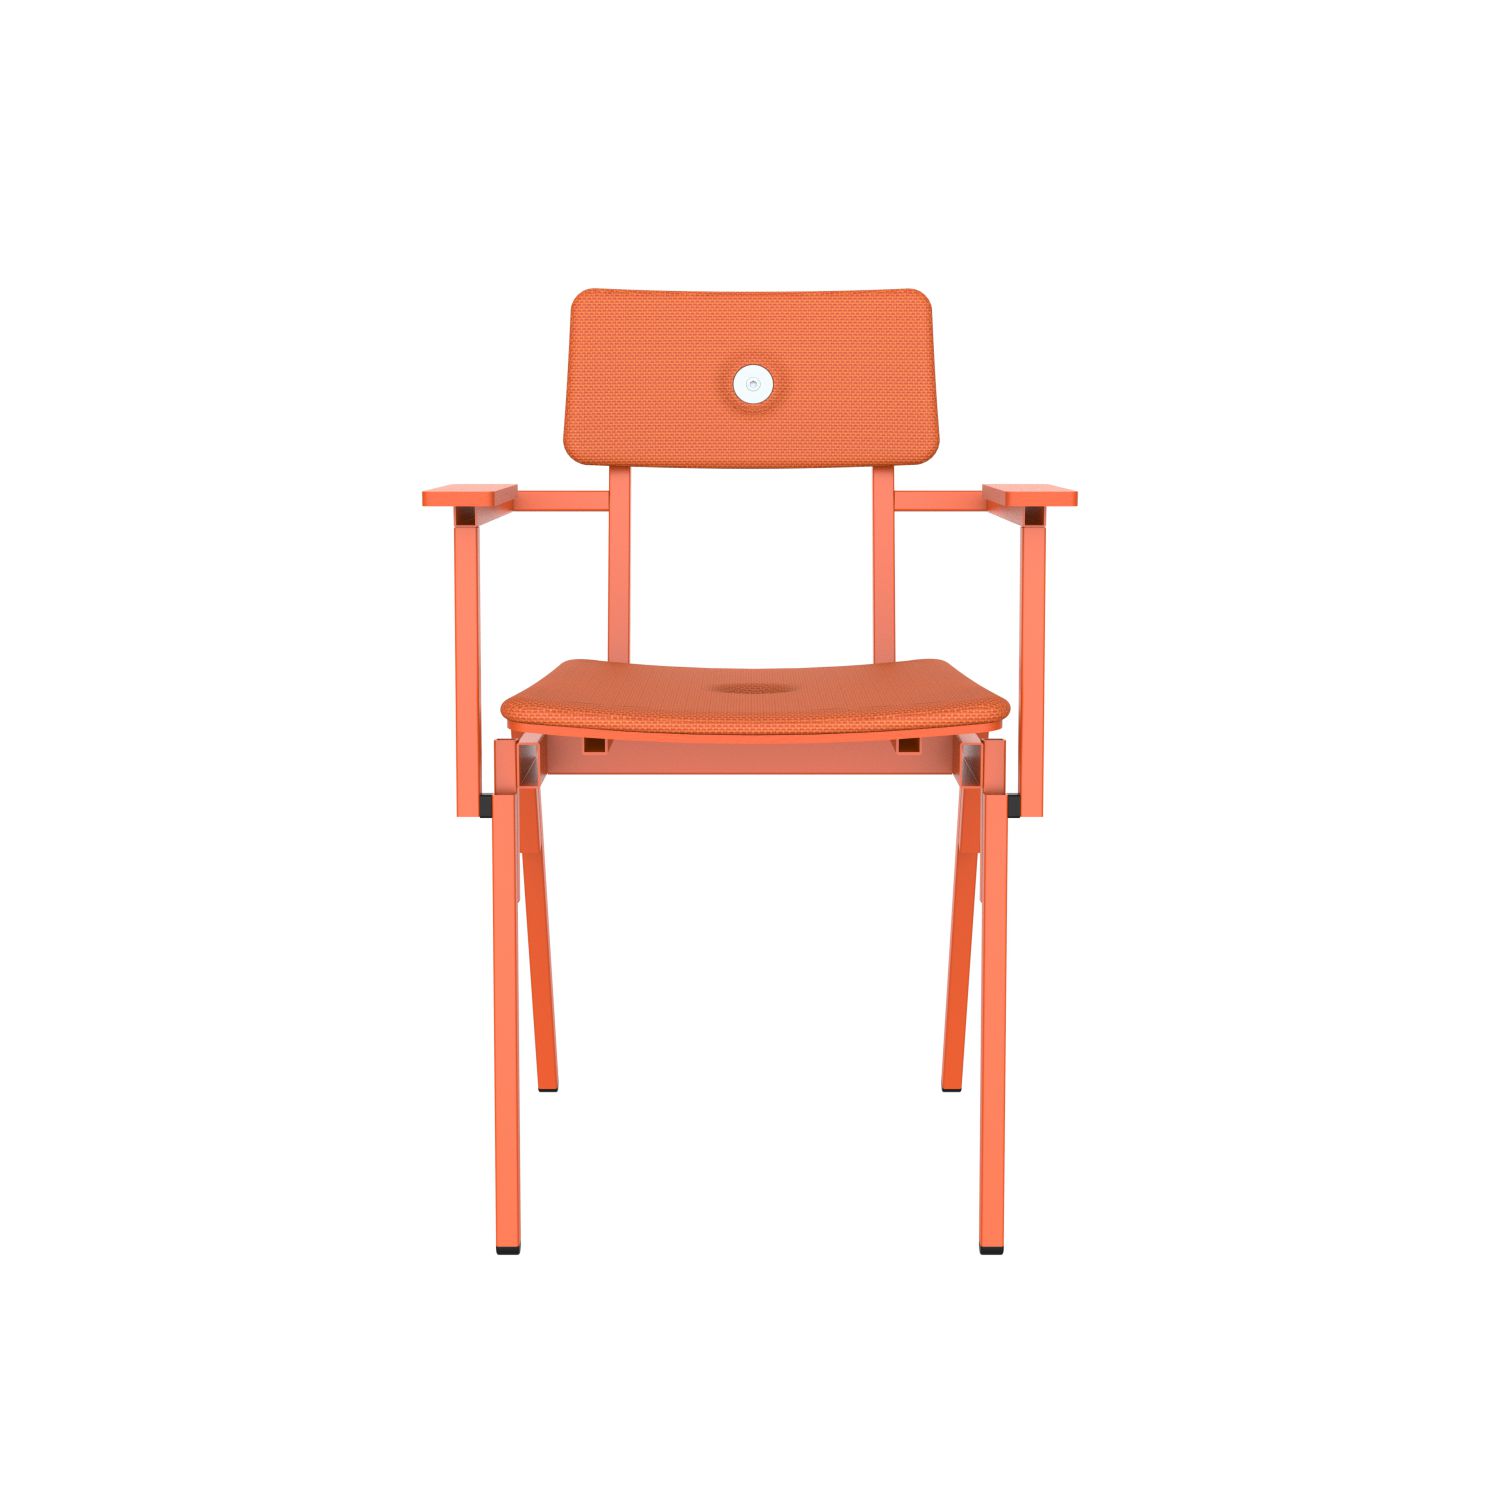 lensvelt piet hein eek mitw upholstered chair with armrests burn orange 102 pure orange ral2004 hard leg ends